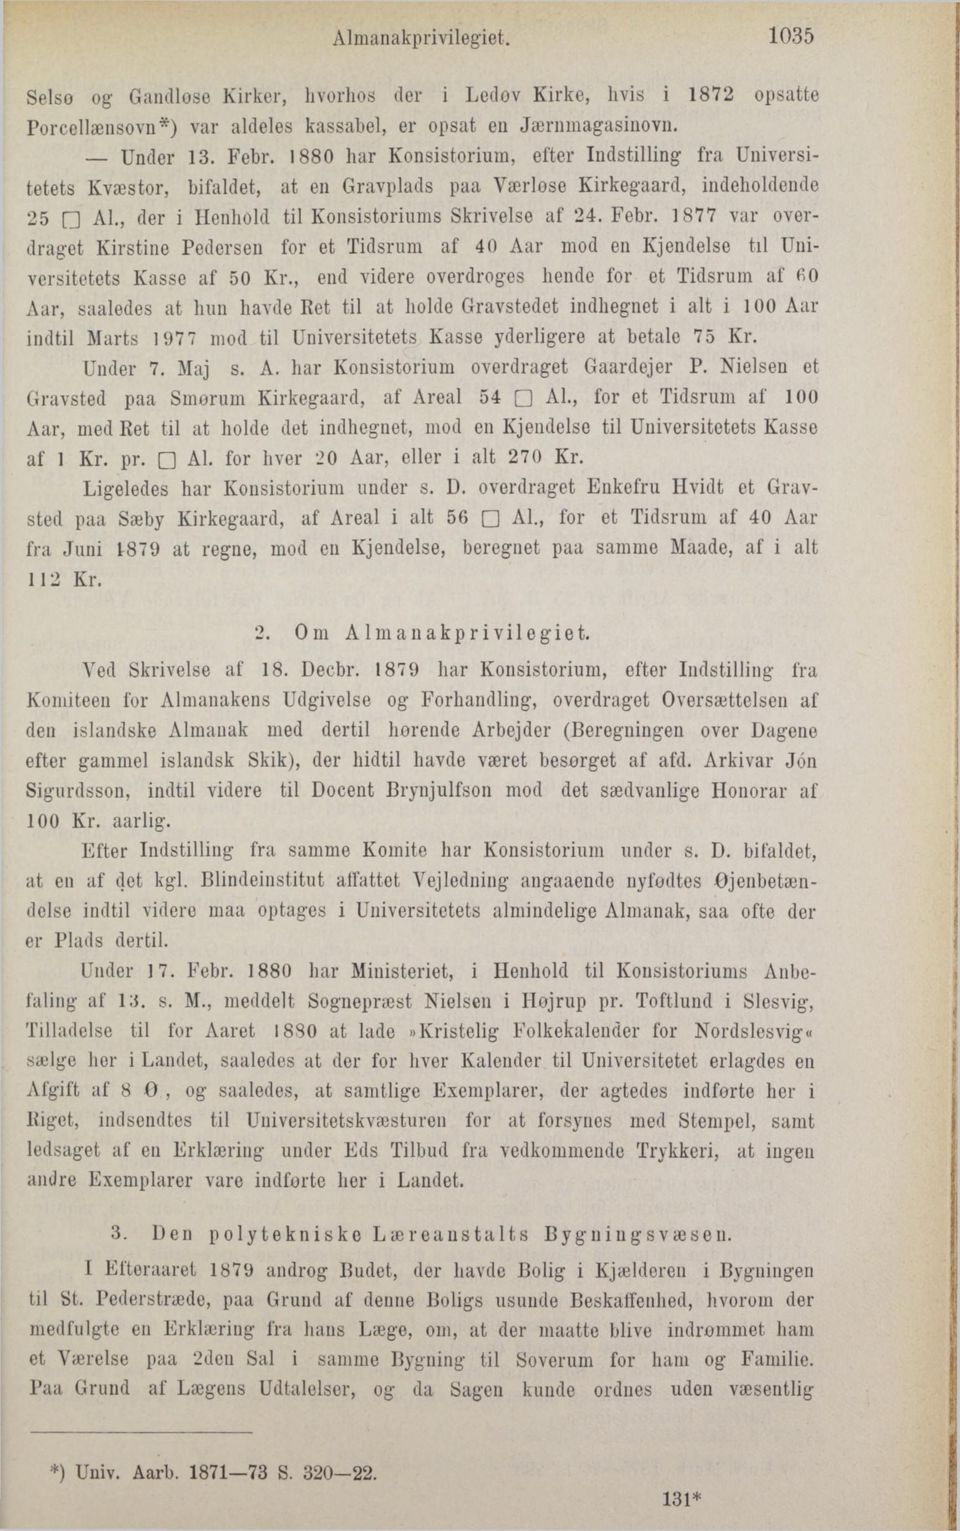 1877 var overdraget Kirstine Pedersen for et Tidsrum af 40 Aar mod en Kjendelse til Universitetets Kasse af 50 Kr.